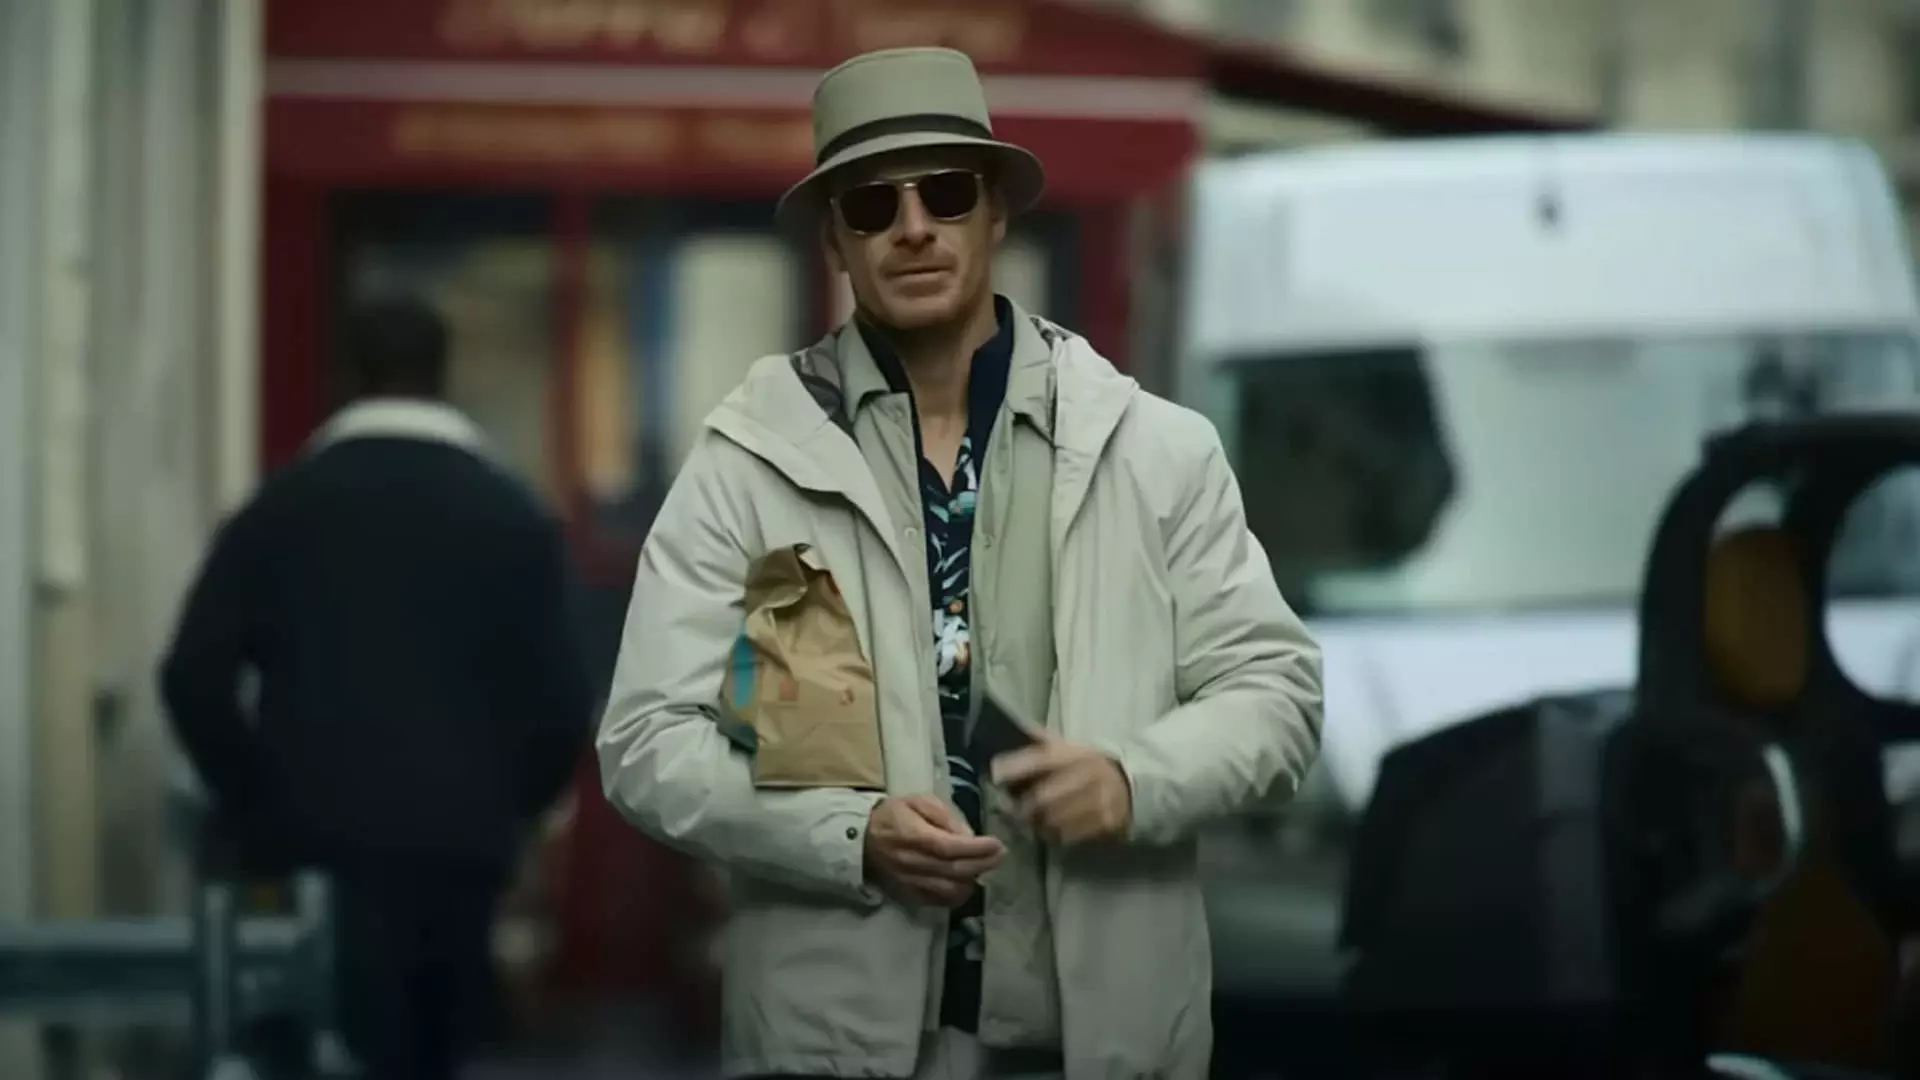 مایکل فاسبندر در حال راه رفتن در خیابان در نمایی از فیلم قاتل به کارگردانی دیوید فینچر